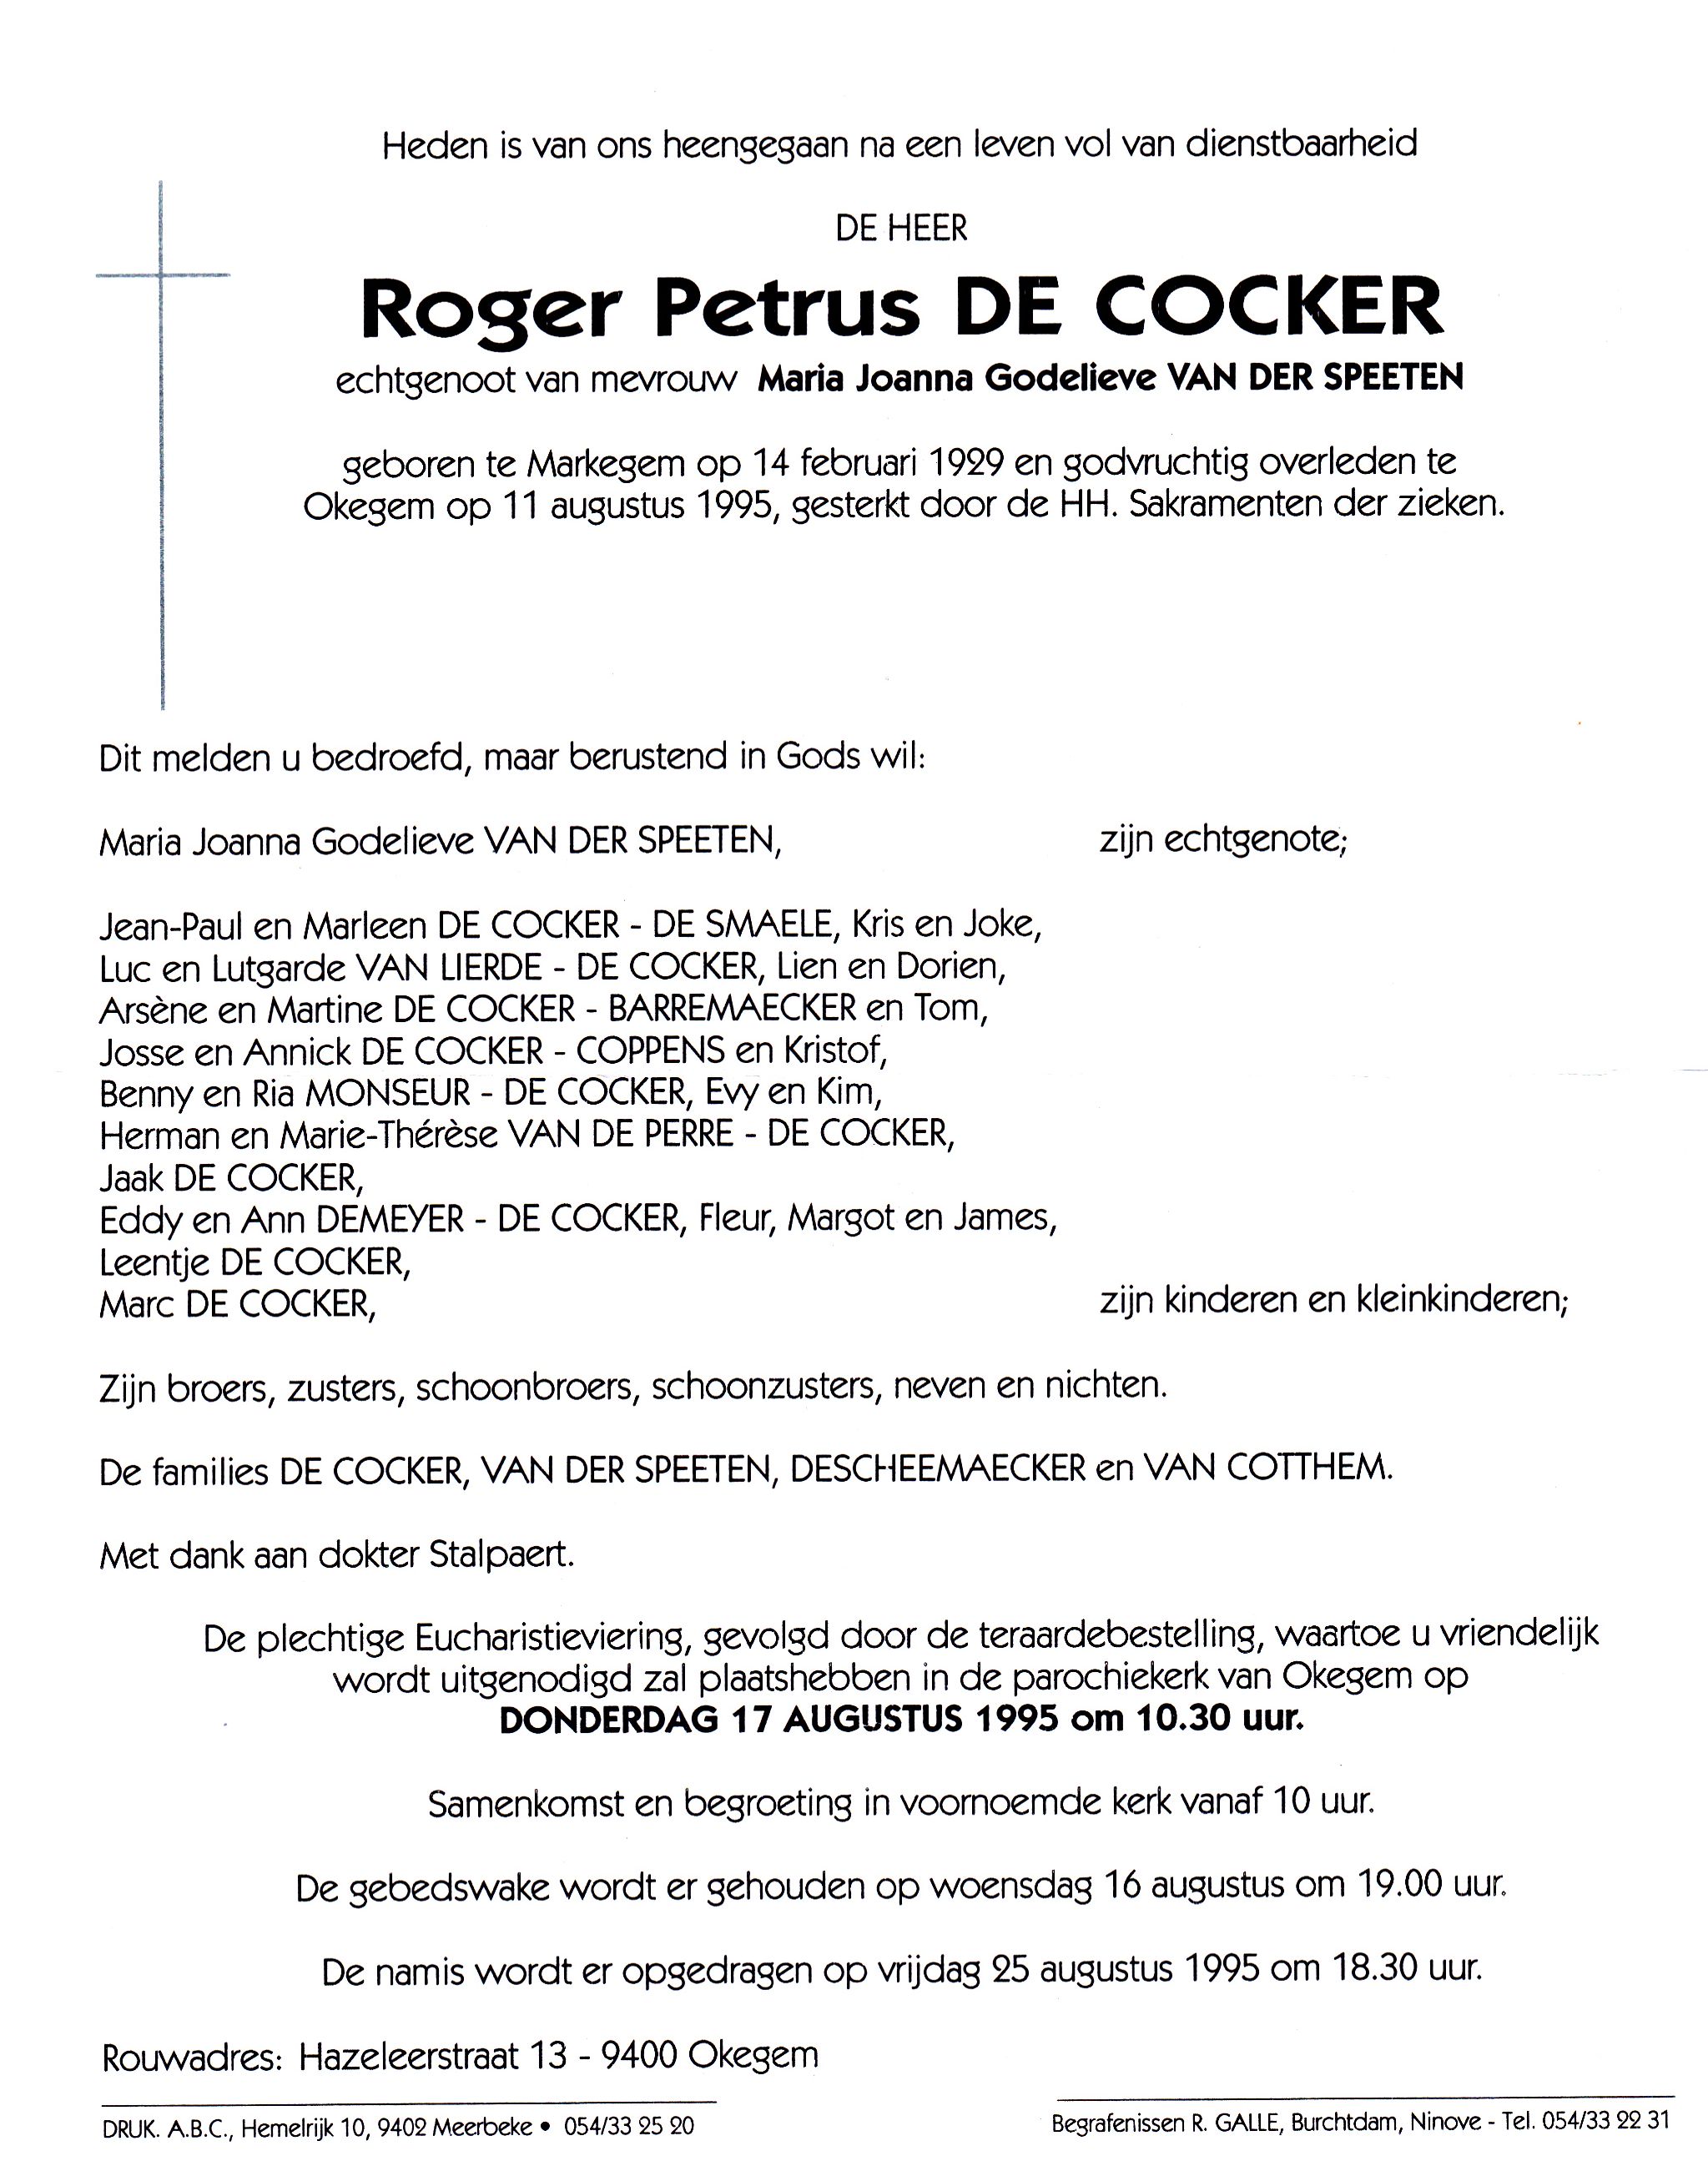 De Cocker Roger Petrus 